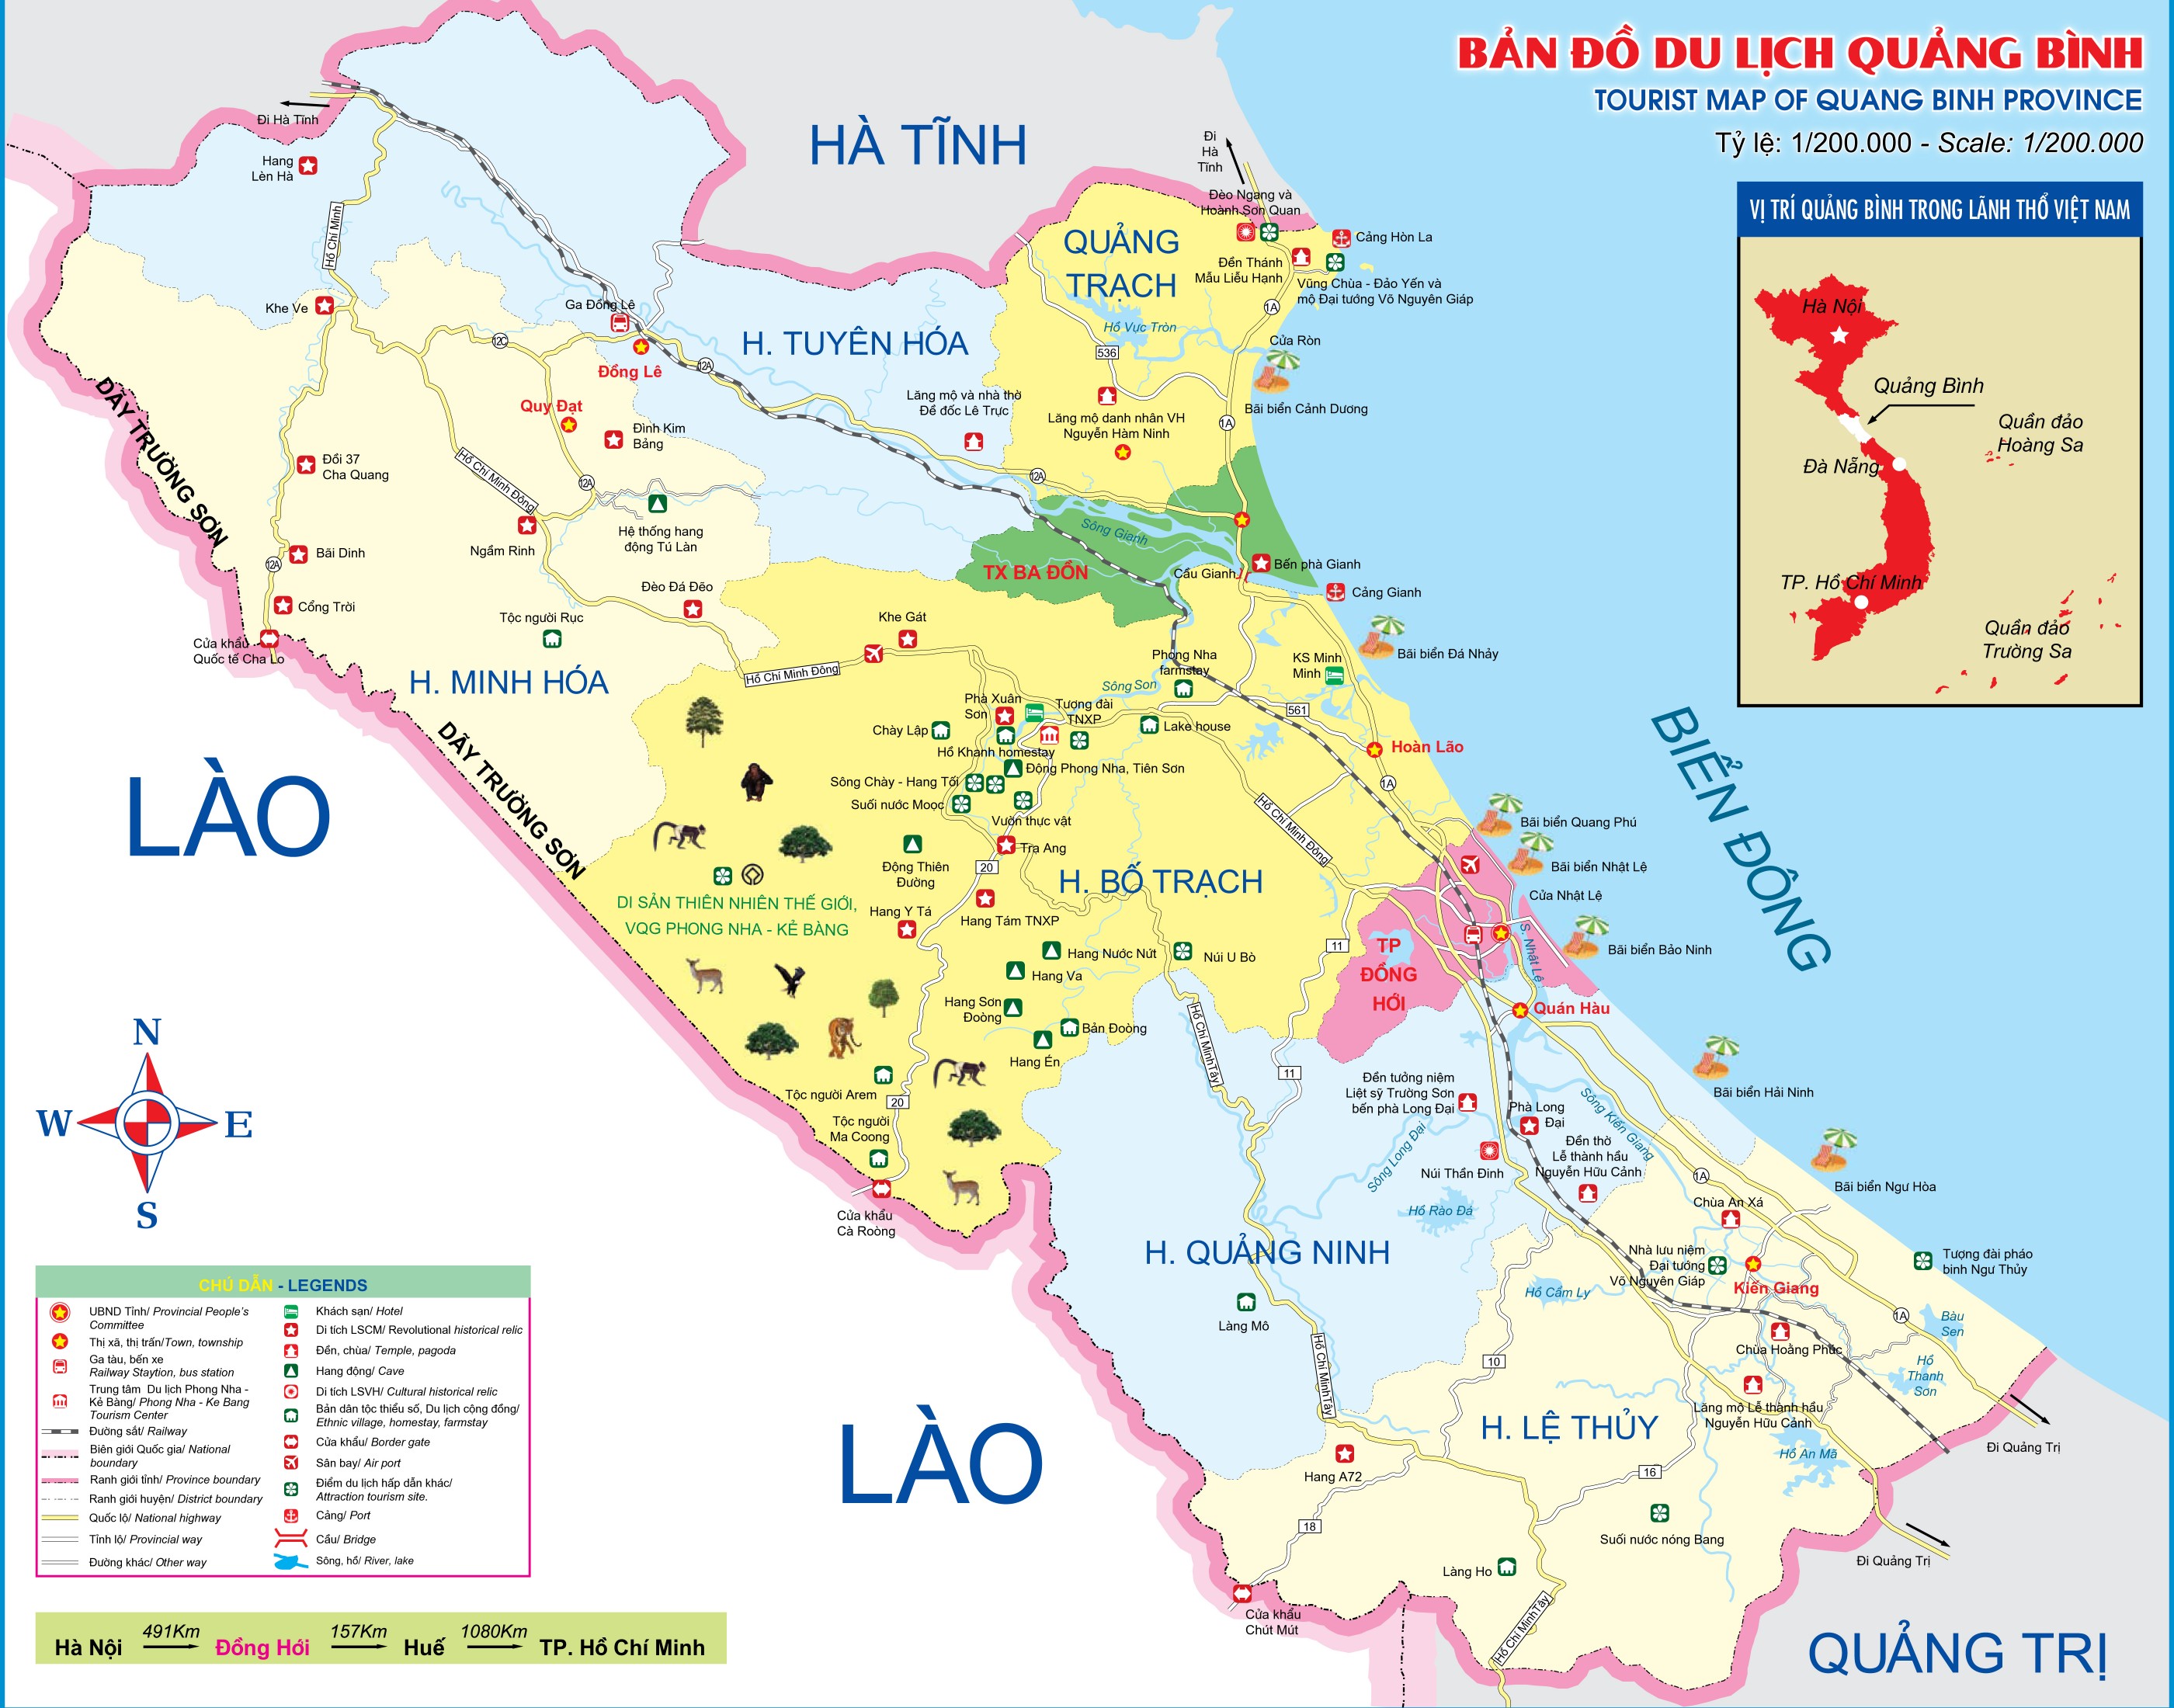 Bản đồ hành chính Quảng Bình đang chờ đón bạn khám phá cùng với những cụm công nghiệp phát triển đến từng khu vực. Điều đó cũng đồng nghĩa với những cơ hội mới cho kinh tế và việc làm tại địa phương.